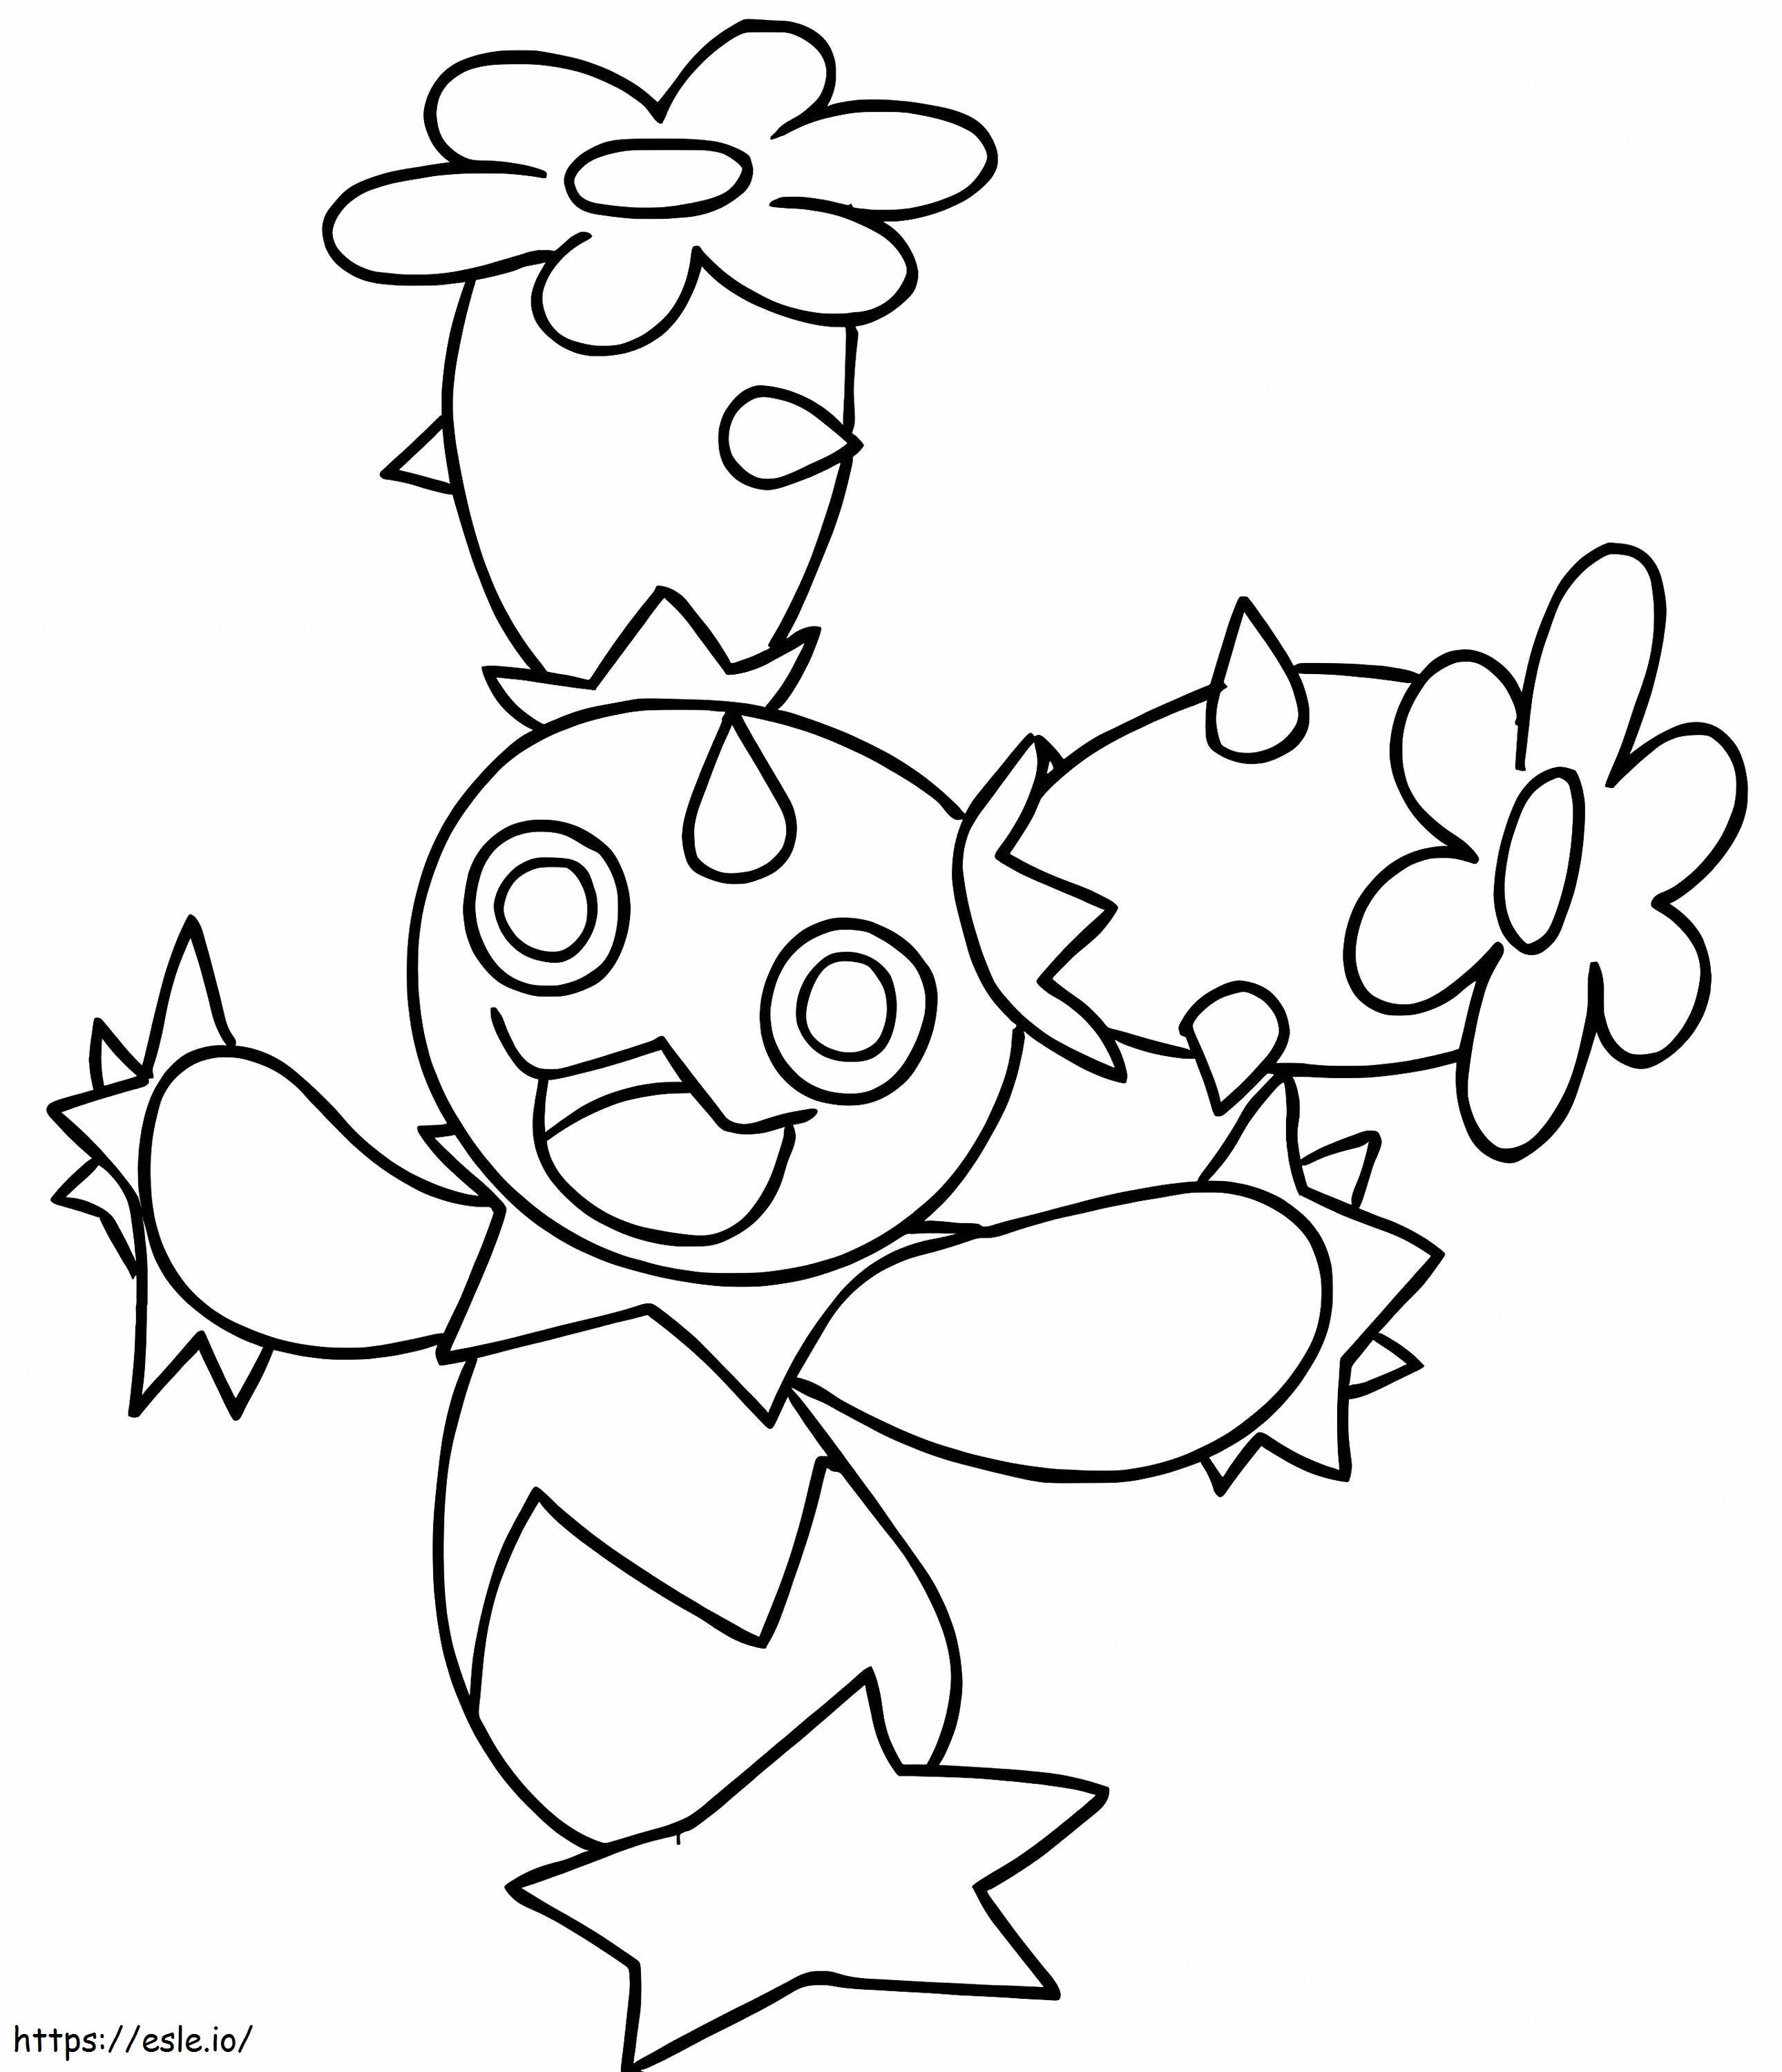 Tipo planta  Dessin pokemon, Image de pokemon, Coloriage pokemon